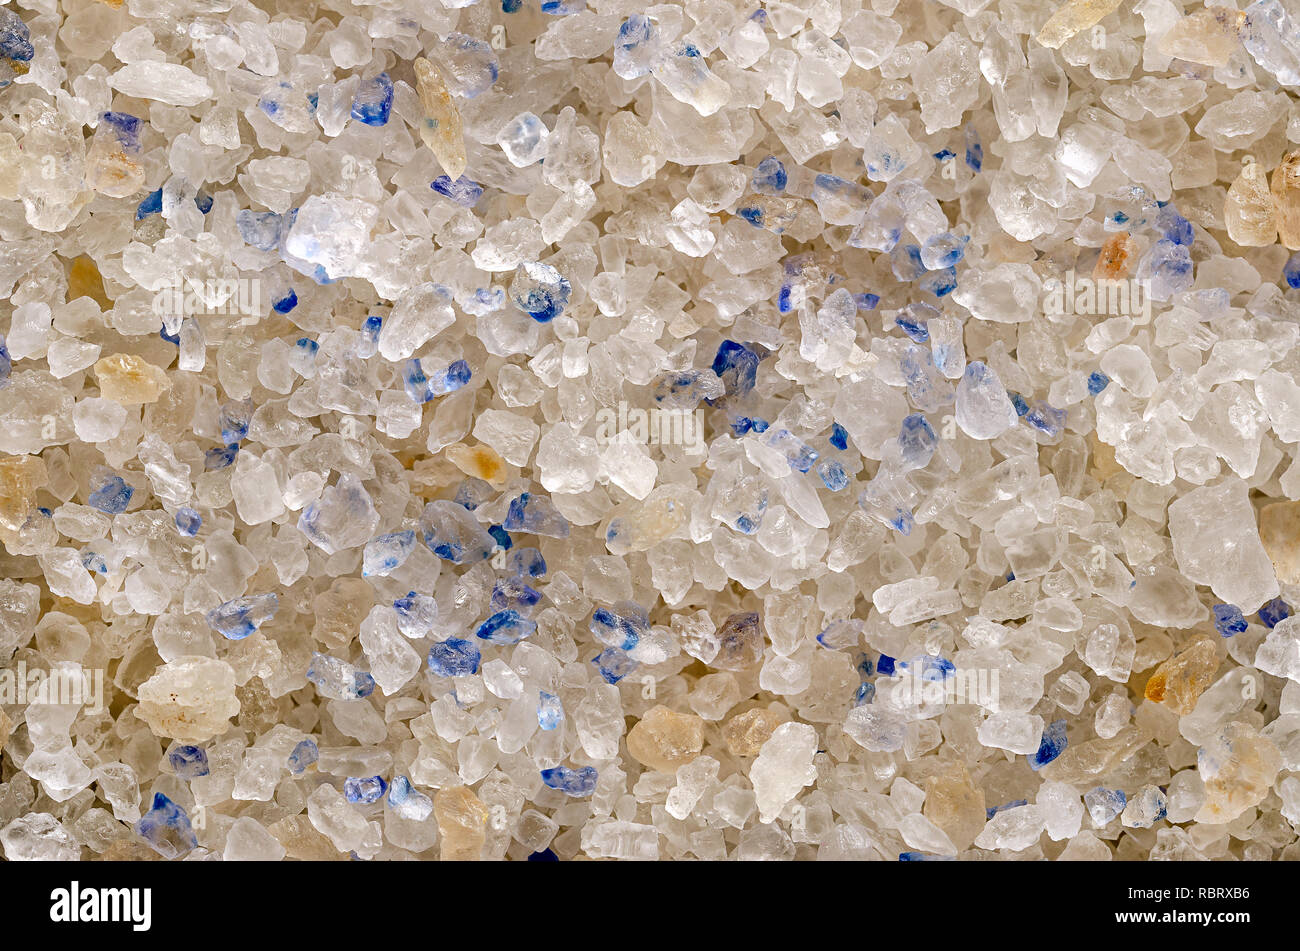 Les cristaux de sel Bleu de Perse, gros plan et d'arrière-plan de surface. Sel fin de l'Iran. La couleur bleue se produit pendant la formation de la structure cristalline. Banque D'Images